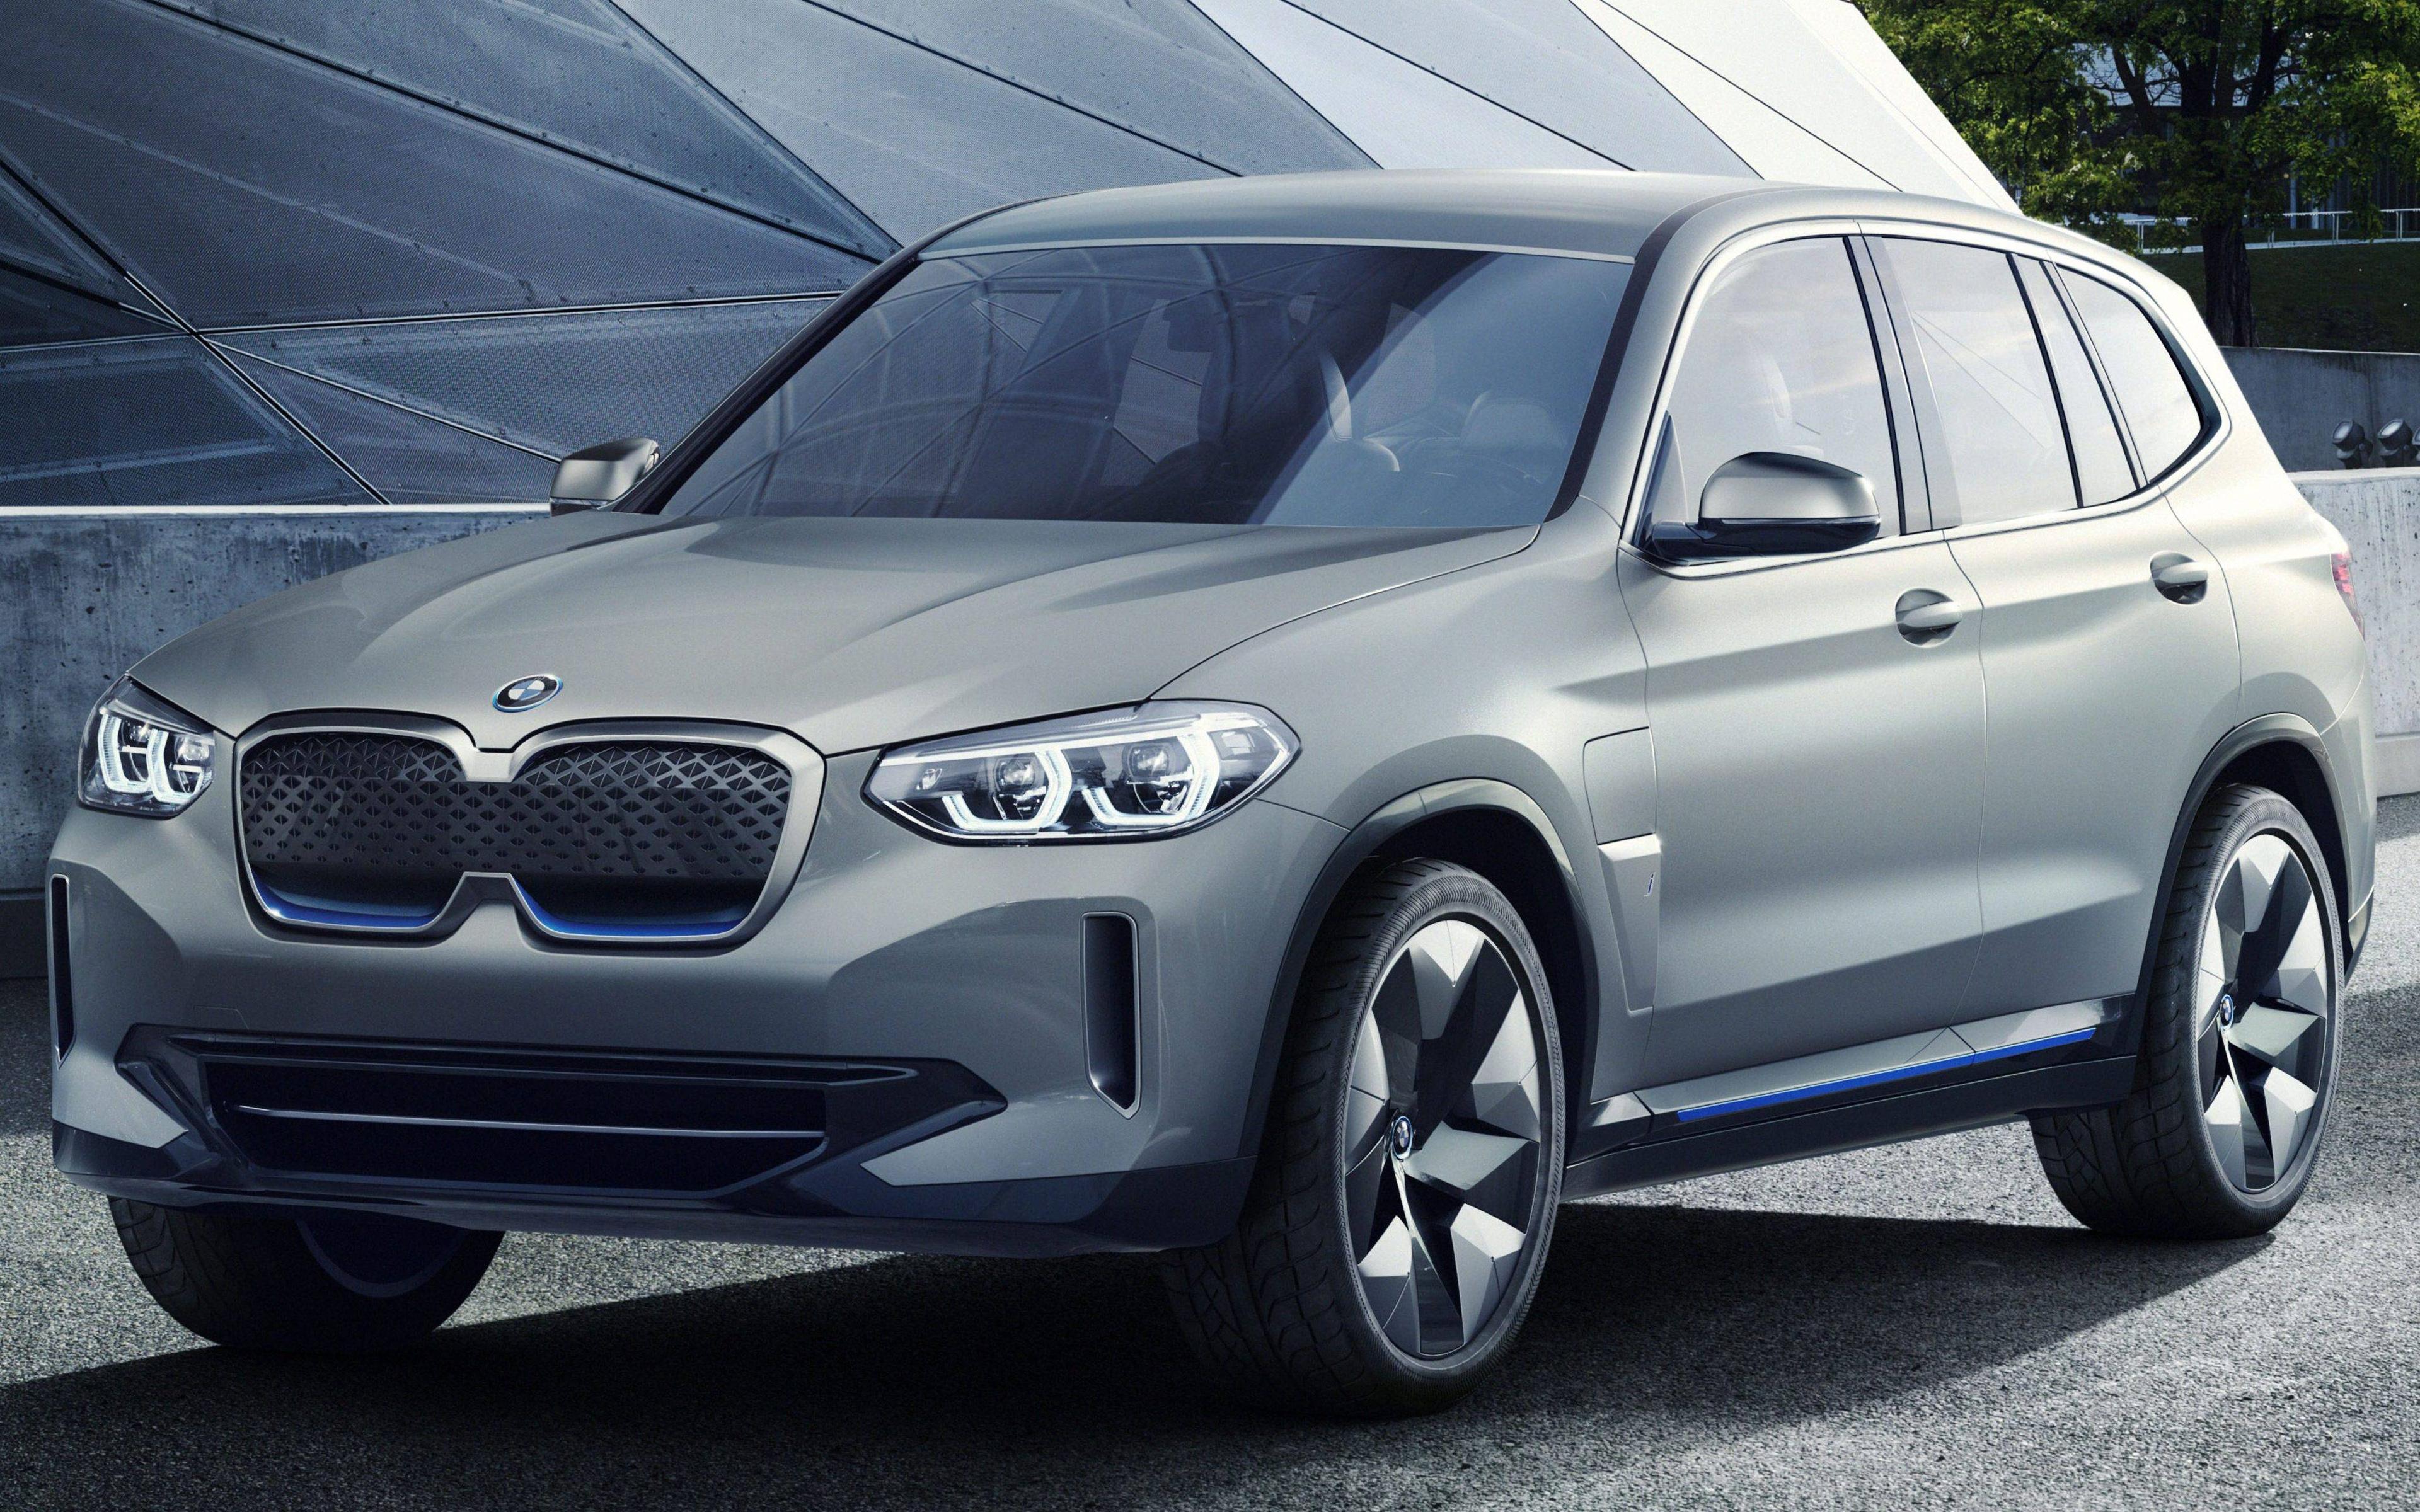 Download wallpaper BMW iX3 Concept, 4k, road, 2019 cars, electric